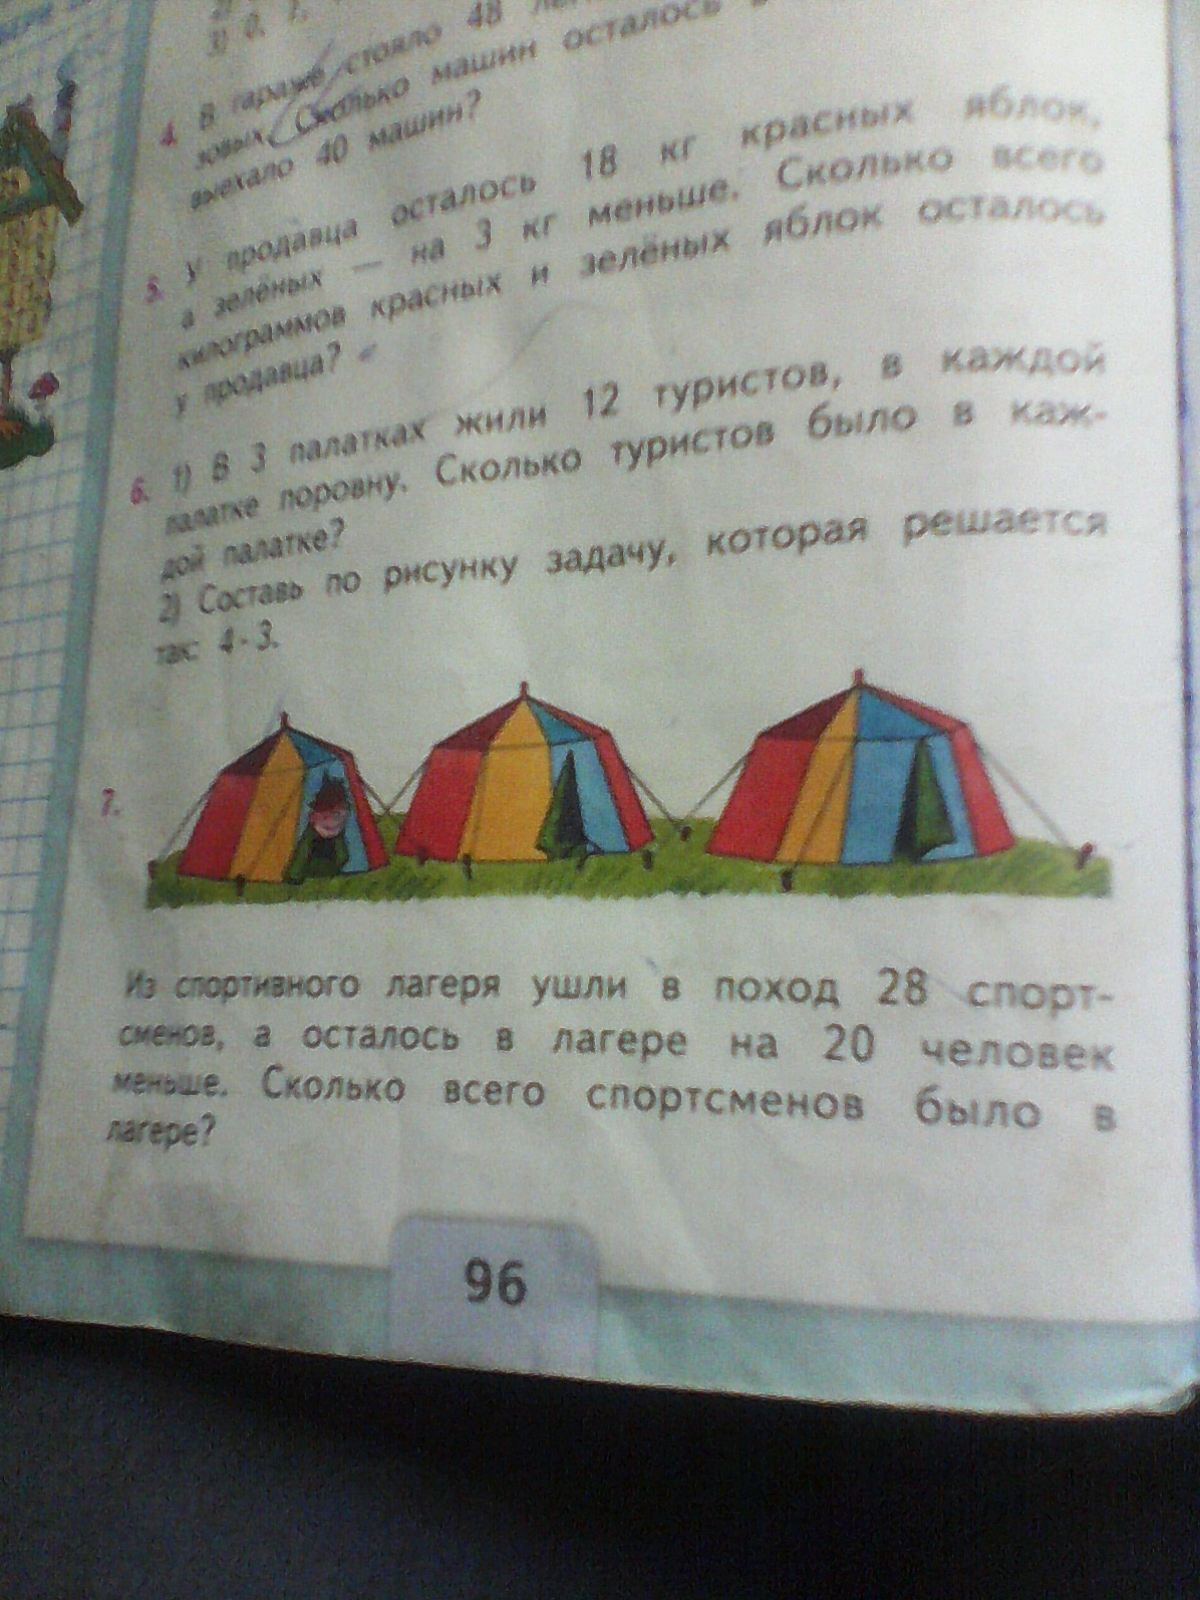 В 3 палатках жили. Составь по рисунку задачу которая решается так 4•3. Задача про палатки. Составь по рисунку задачу которая решается так 4 x 3. Решение задачи про палатки.